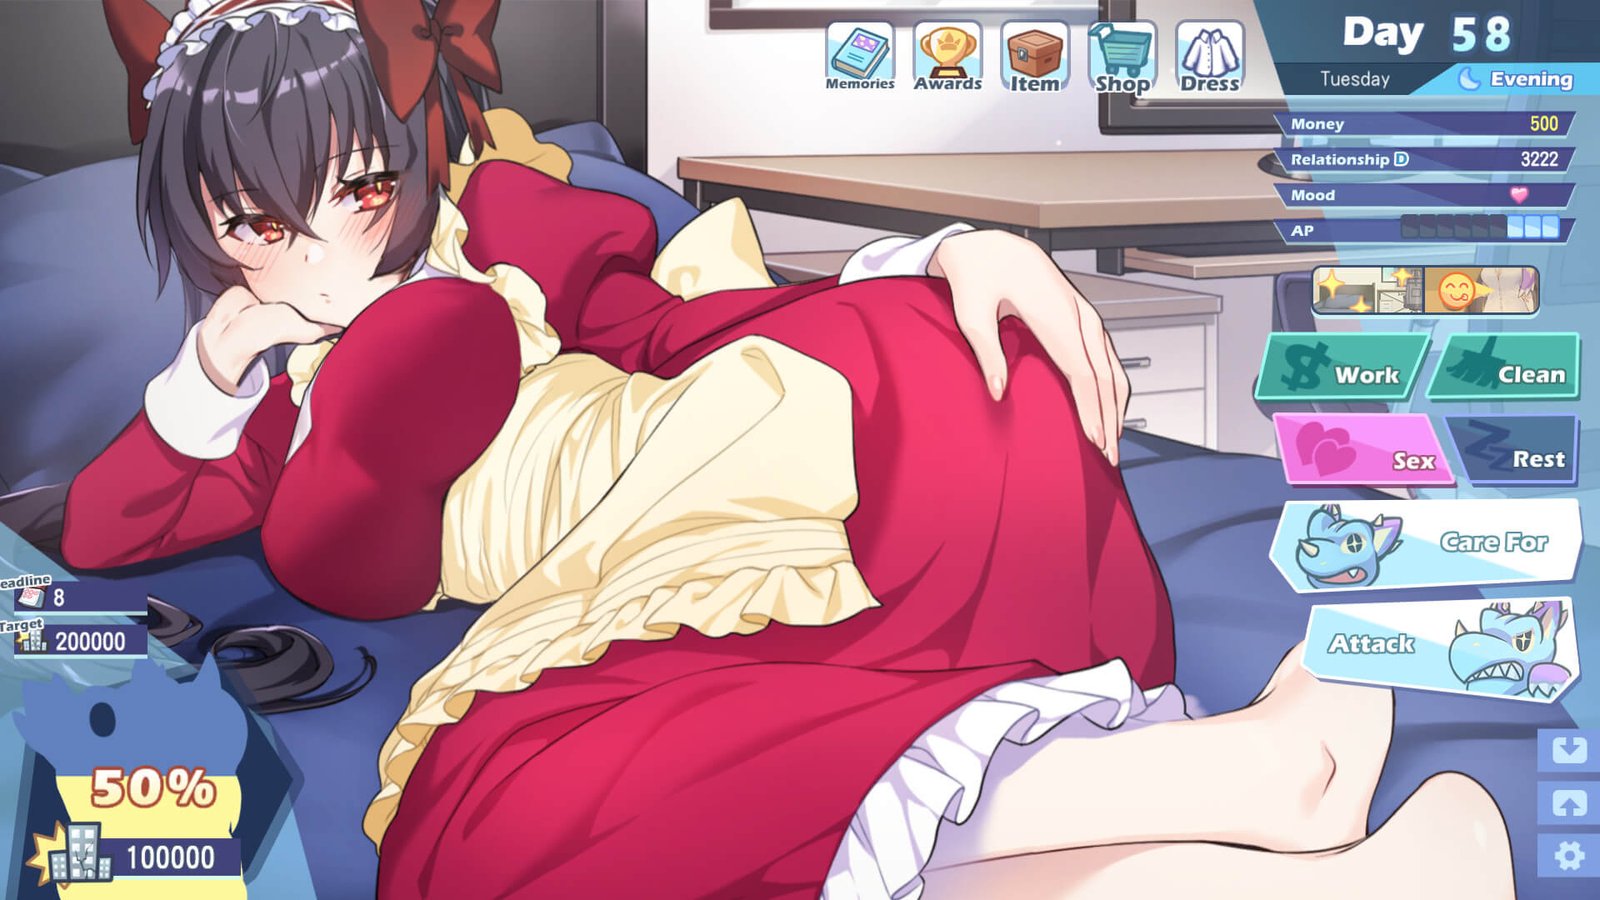 Sexy anime waifu in red dress